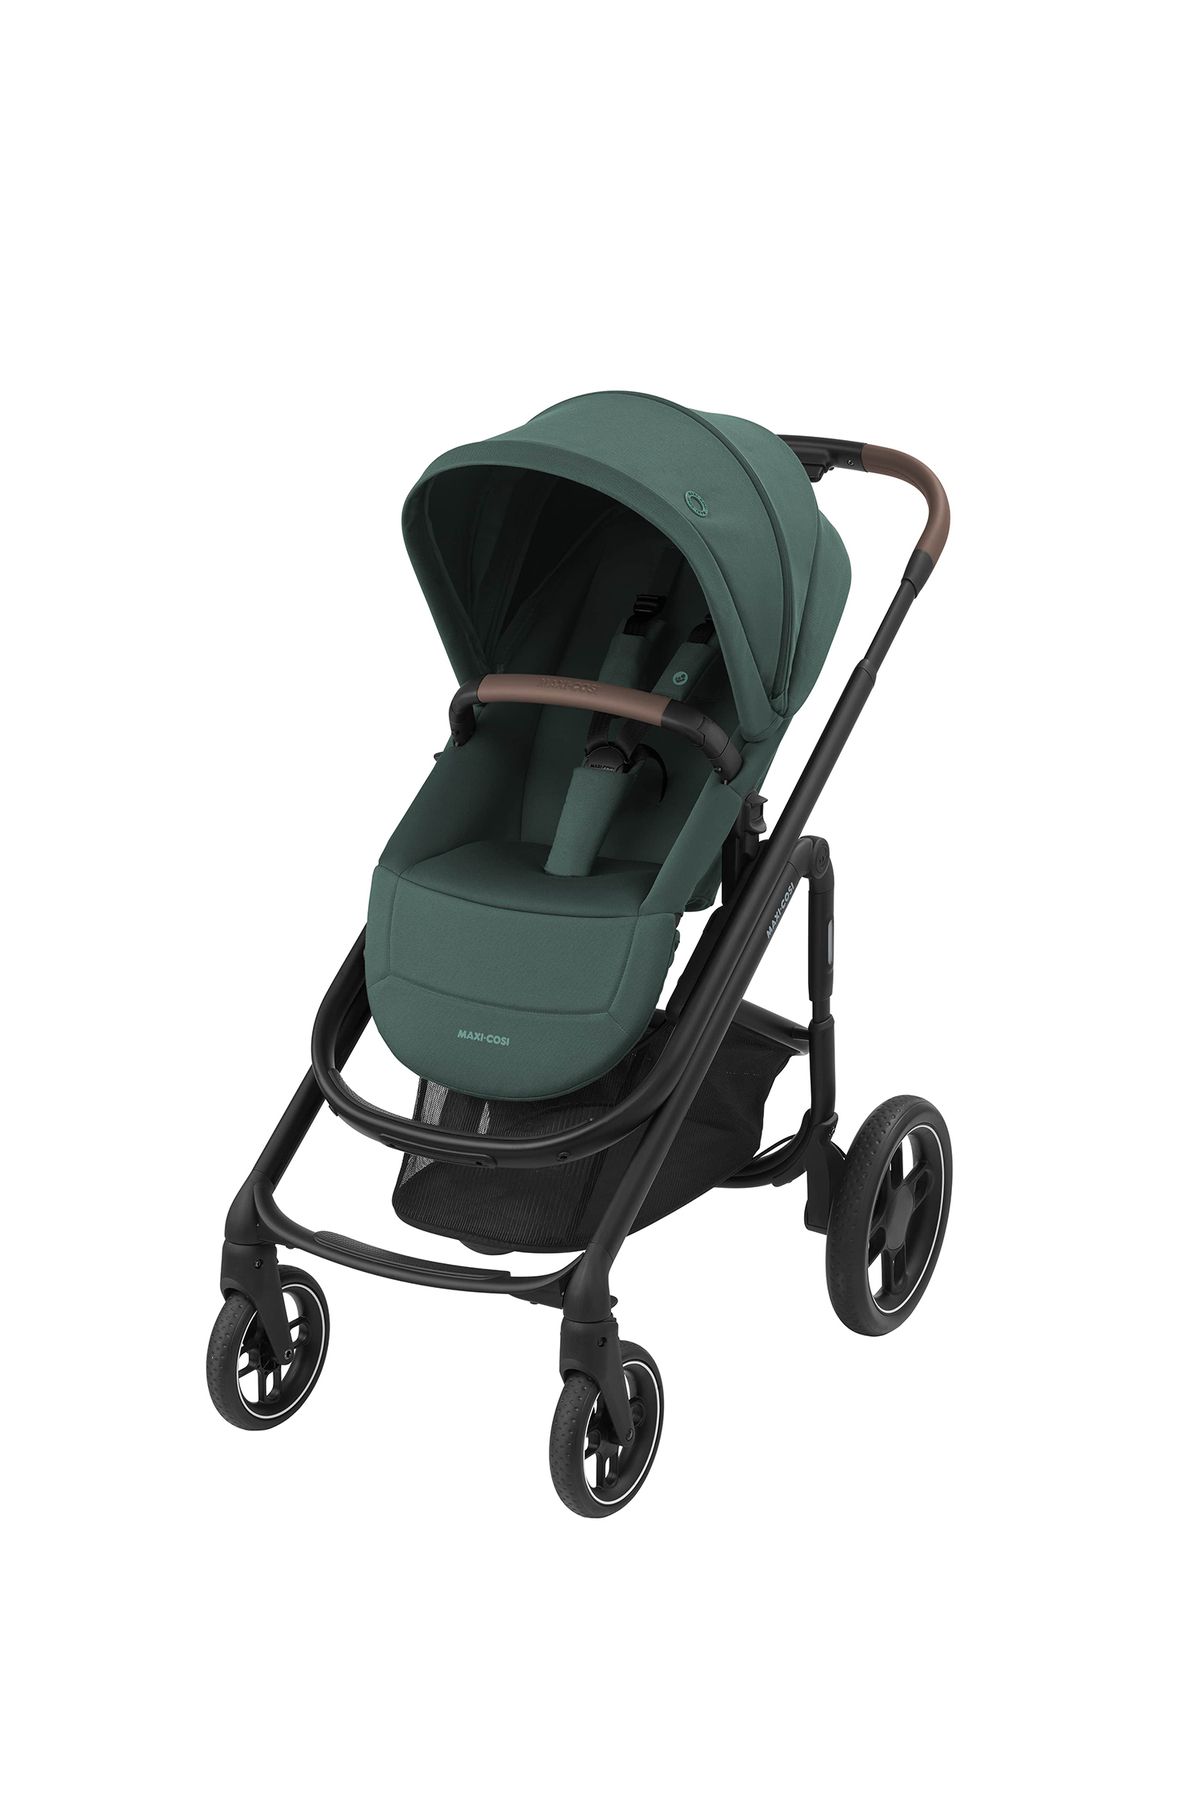 Maxi-Cosi Plaza Ekstra Portbebeli Doğumdan İtibaren Kullanılabilen Essential Green Bebek Arabası